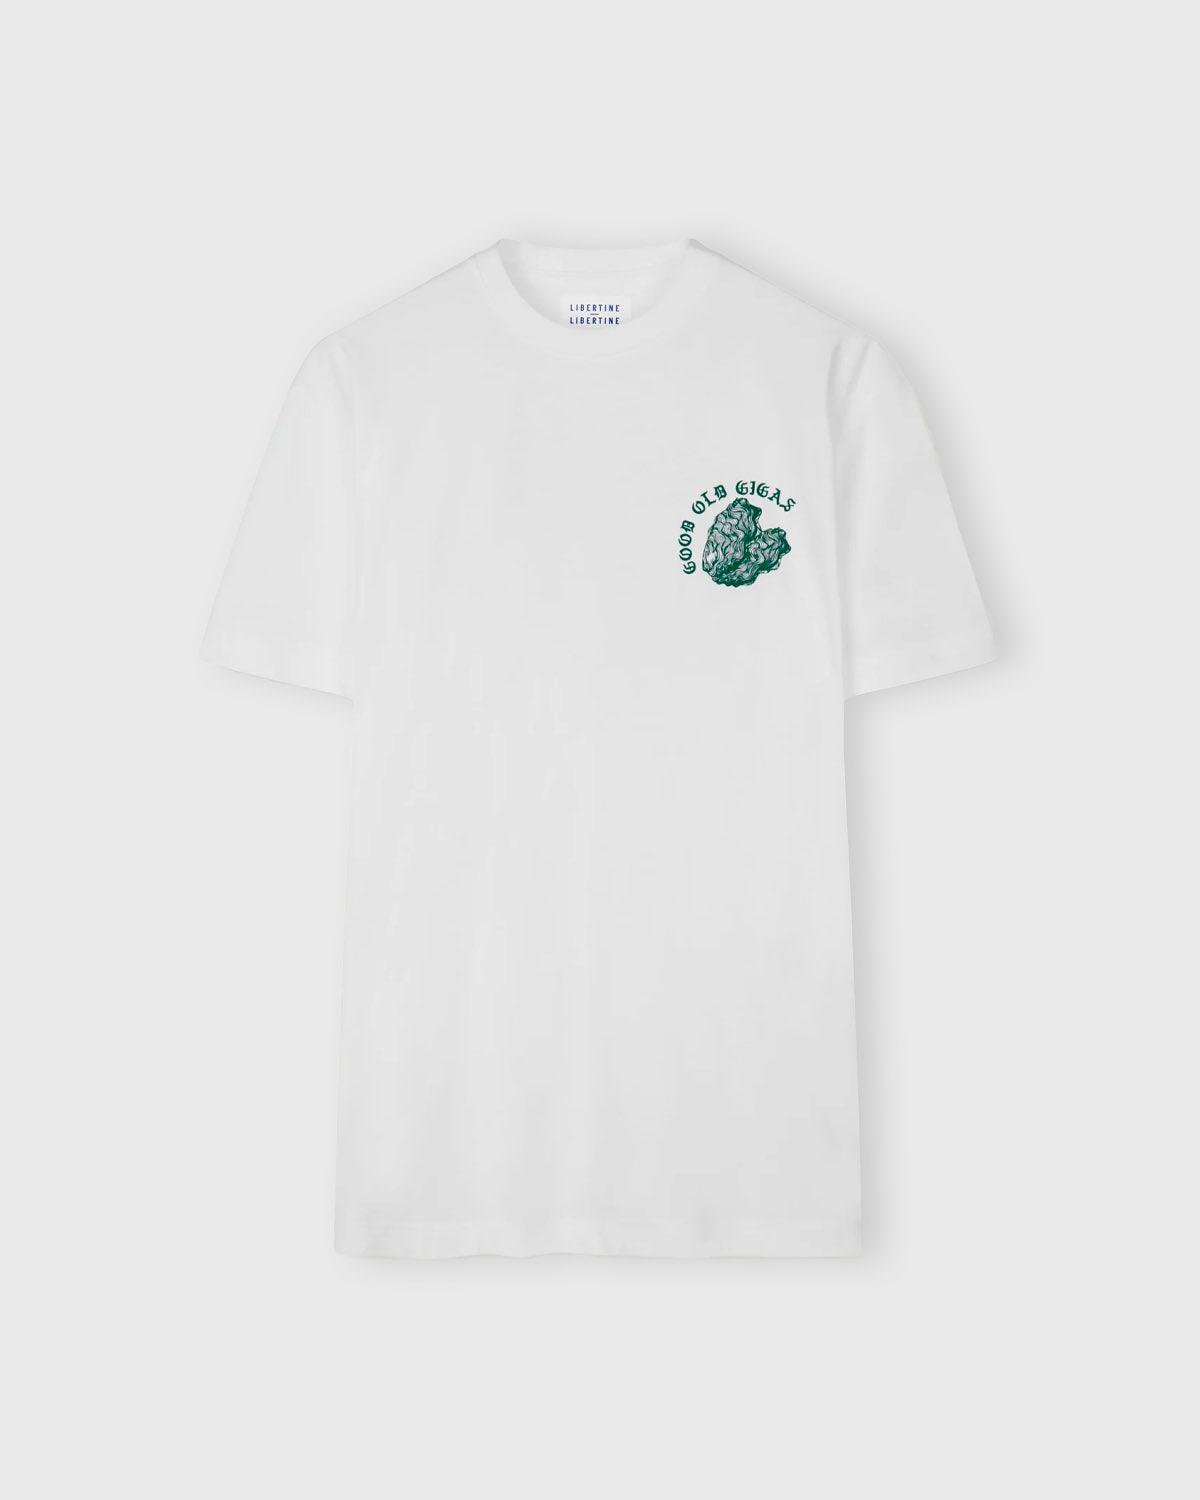 Beat Gigas T-shirt - White - Libertine-Libertine - Kul og Koks